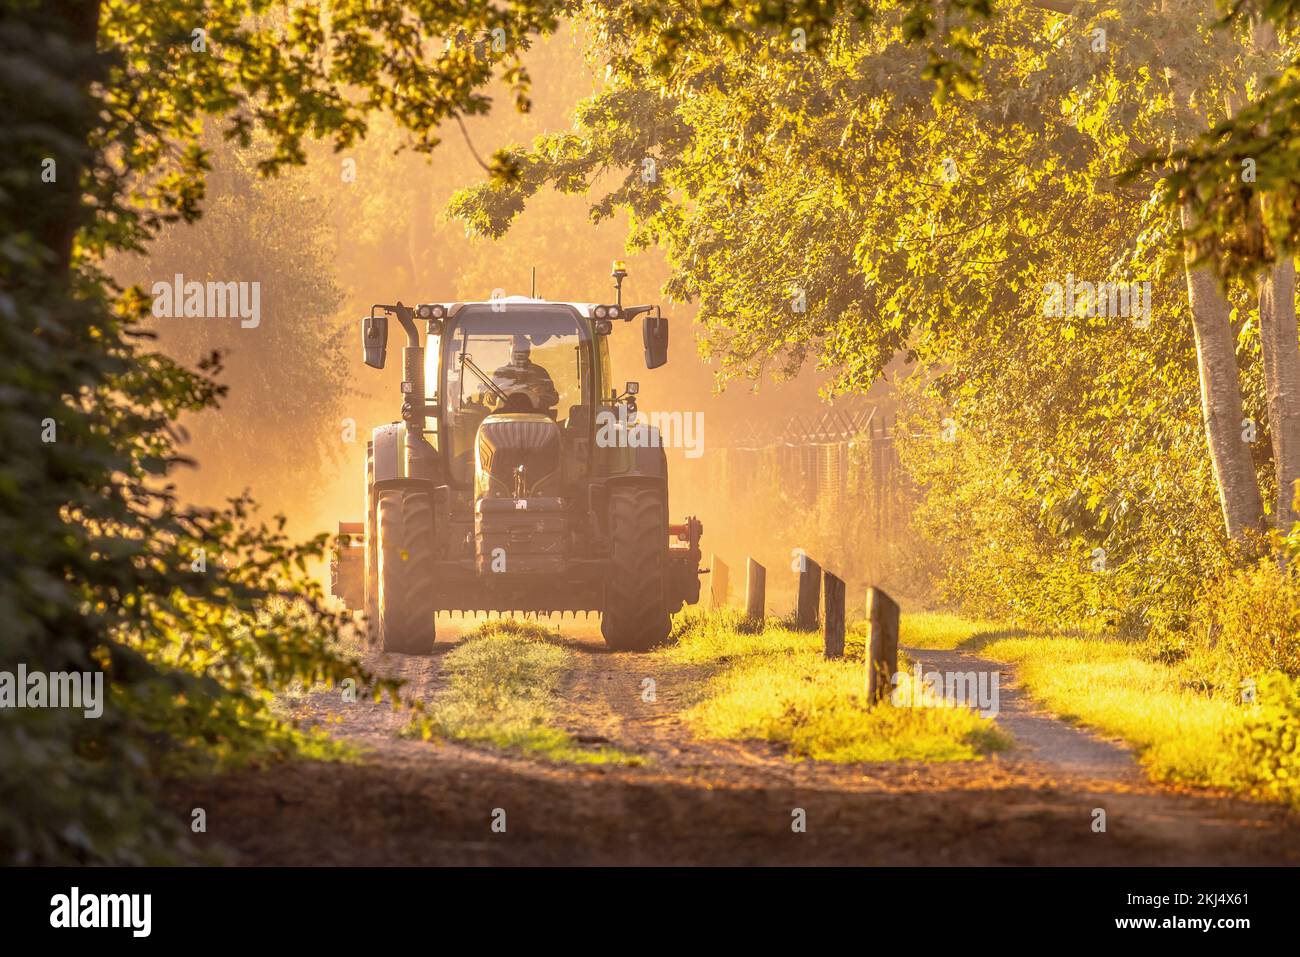 Traktor im goldenen Sonnenaufgang, trübes Licht. Landwirtschaftliches Fahrzeug auf unbefestigter Straße am Morgen. Drenthe Niederlande. Stockfoto